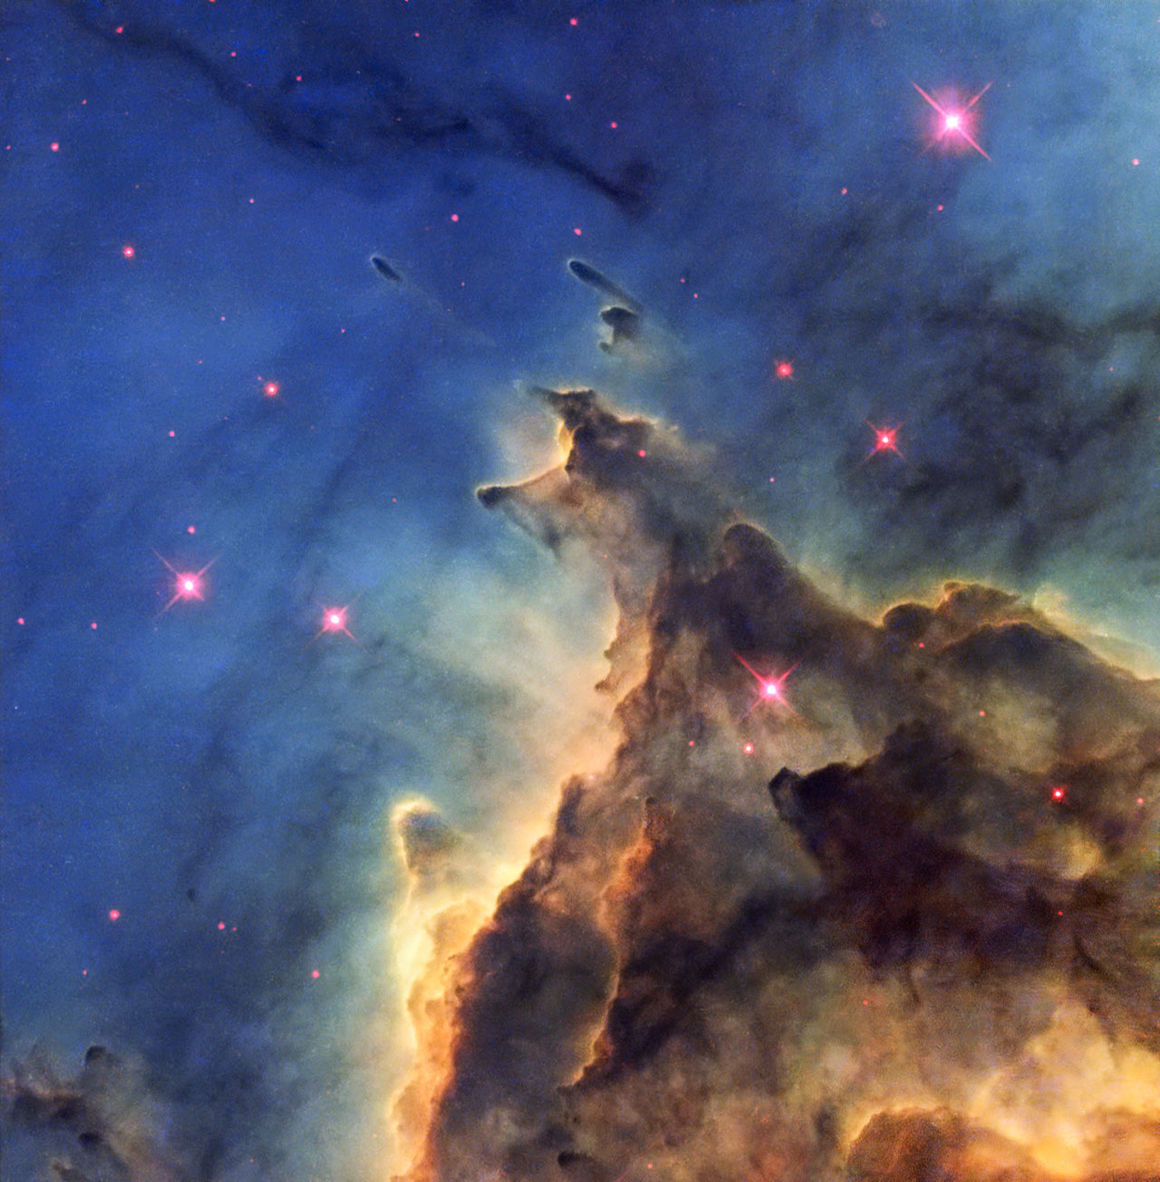 NGC 2174, geimþoka, stjörnuþoka, Óríon